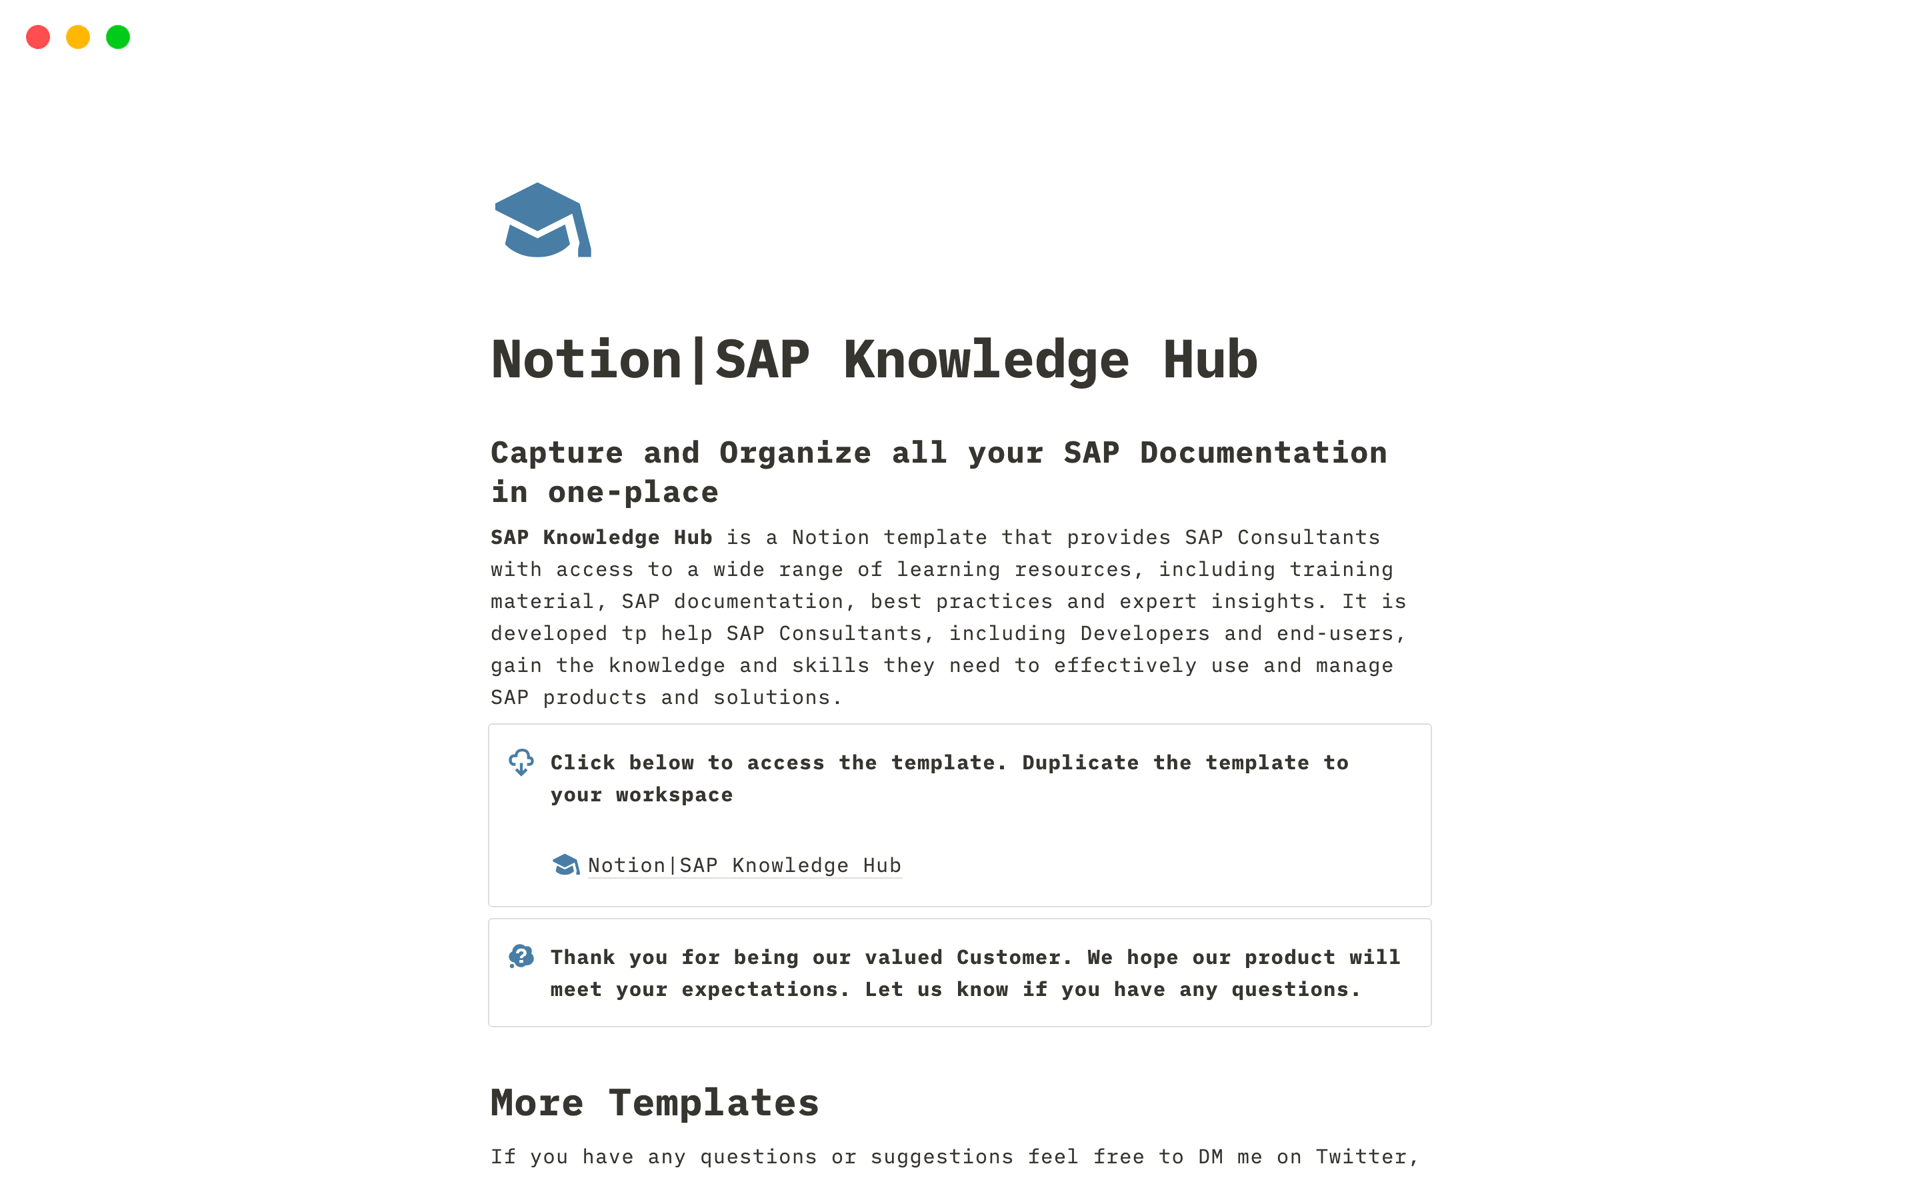 Uma prévia do modelo para SAP Knowledge Hub